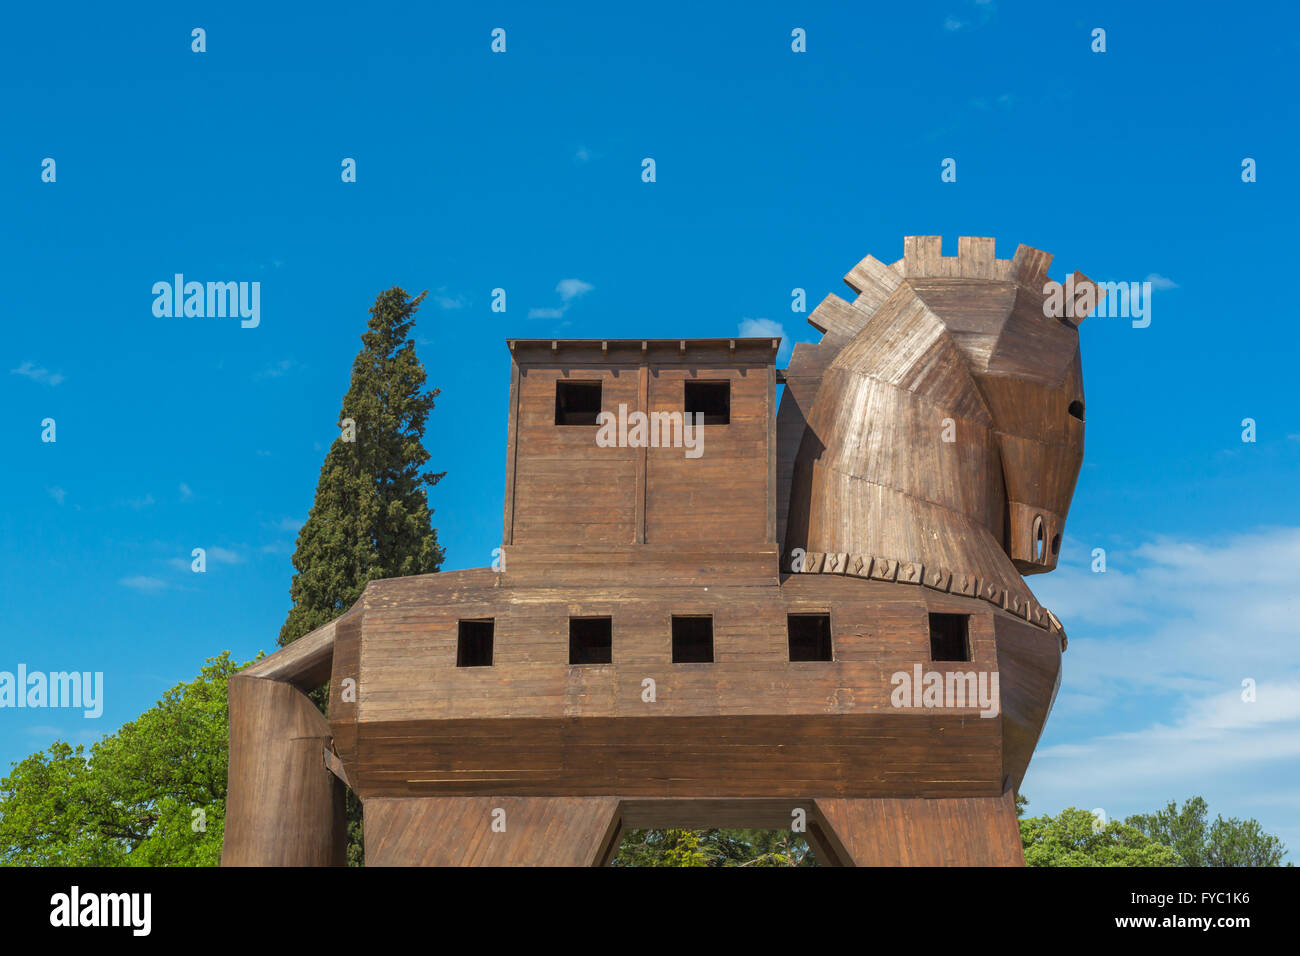 TRUVA, TURQUIE - 29 avril 2015 : la sculpture moderne en bois, de cheval de Troie sur la place de l'ancienne Troy Banque D'Images